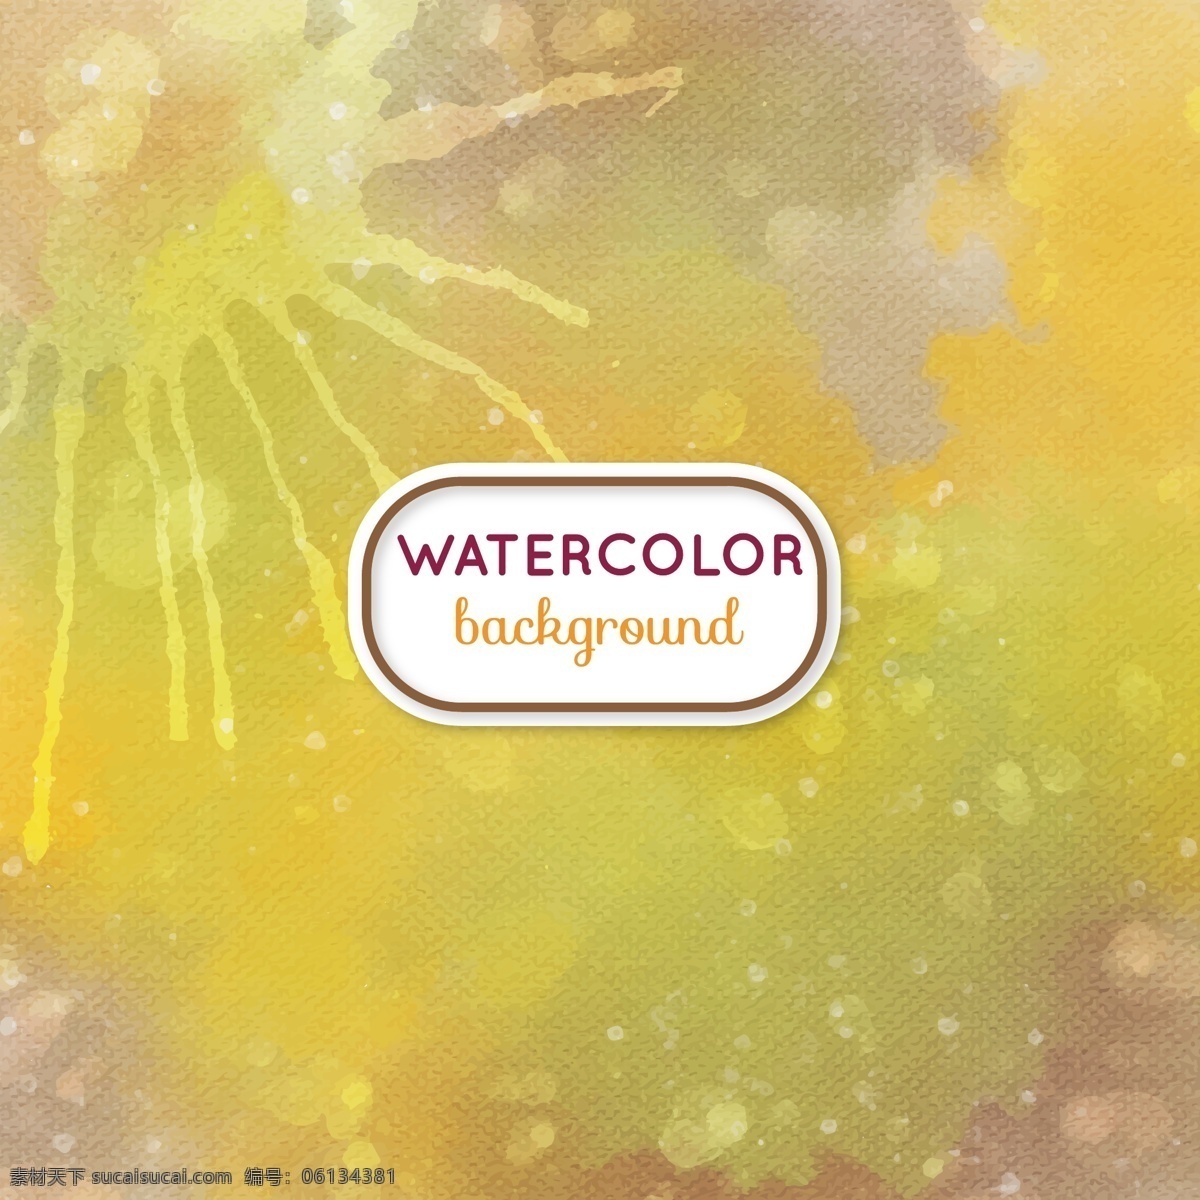 抽象 水彩 背景 水彩背景素材 广告设计模板 ai素材 展板 橘黄色背景 泼墨 自由 水彩画 渲染 韵律